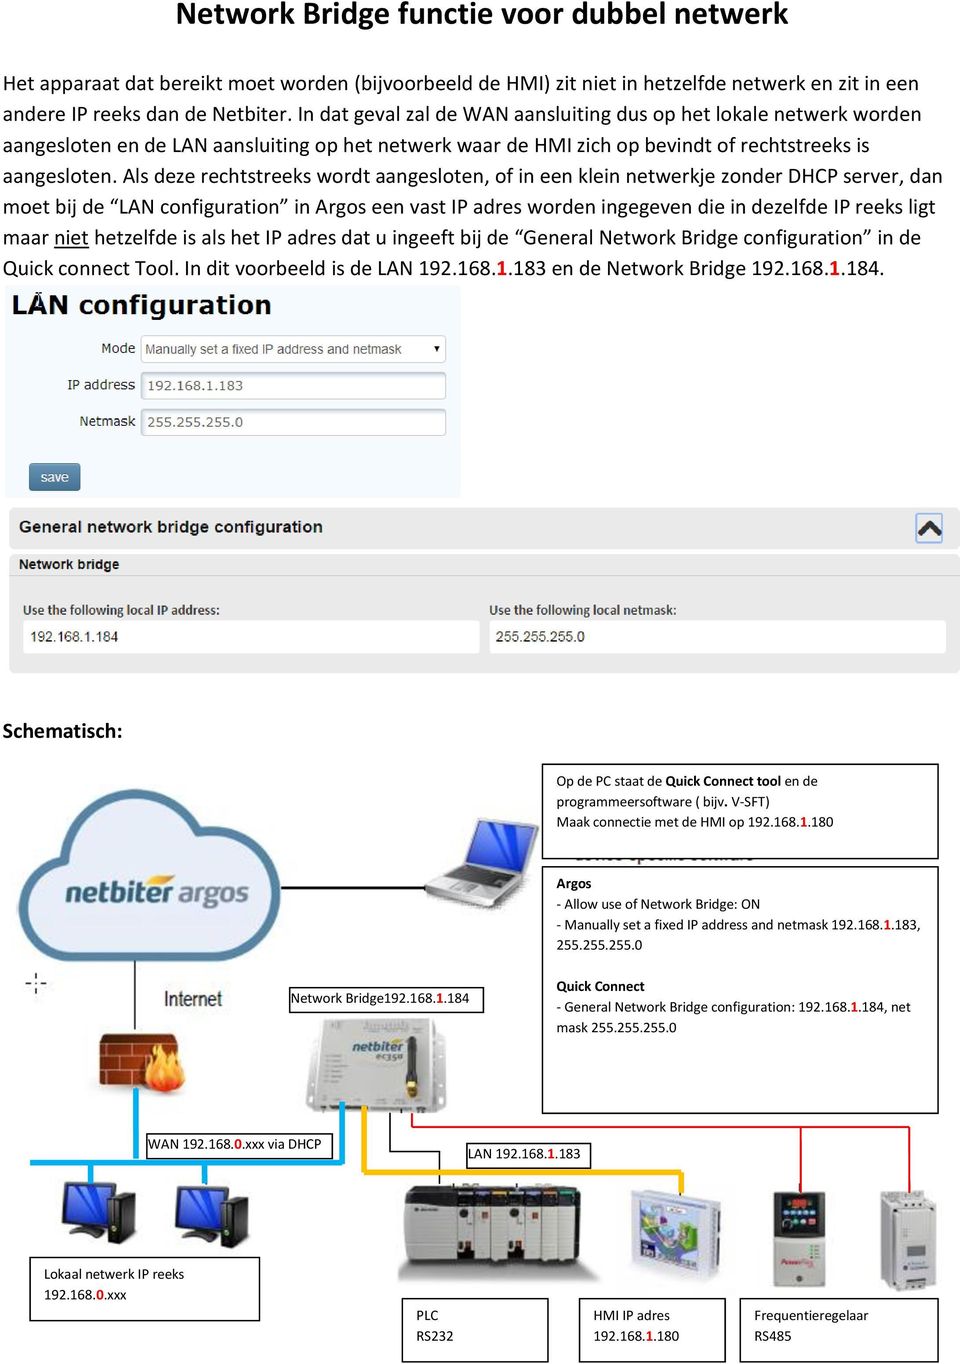 Als deze rechtstreeks wordt aangesloten, of in een klein netwerkje zonder DHCP server, dan moet bij de LAN configuration in Argos een vast IP adres worden ingegeven die in dezelfde IP reeks ligt maar